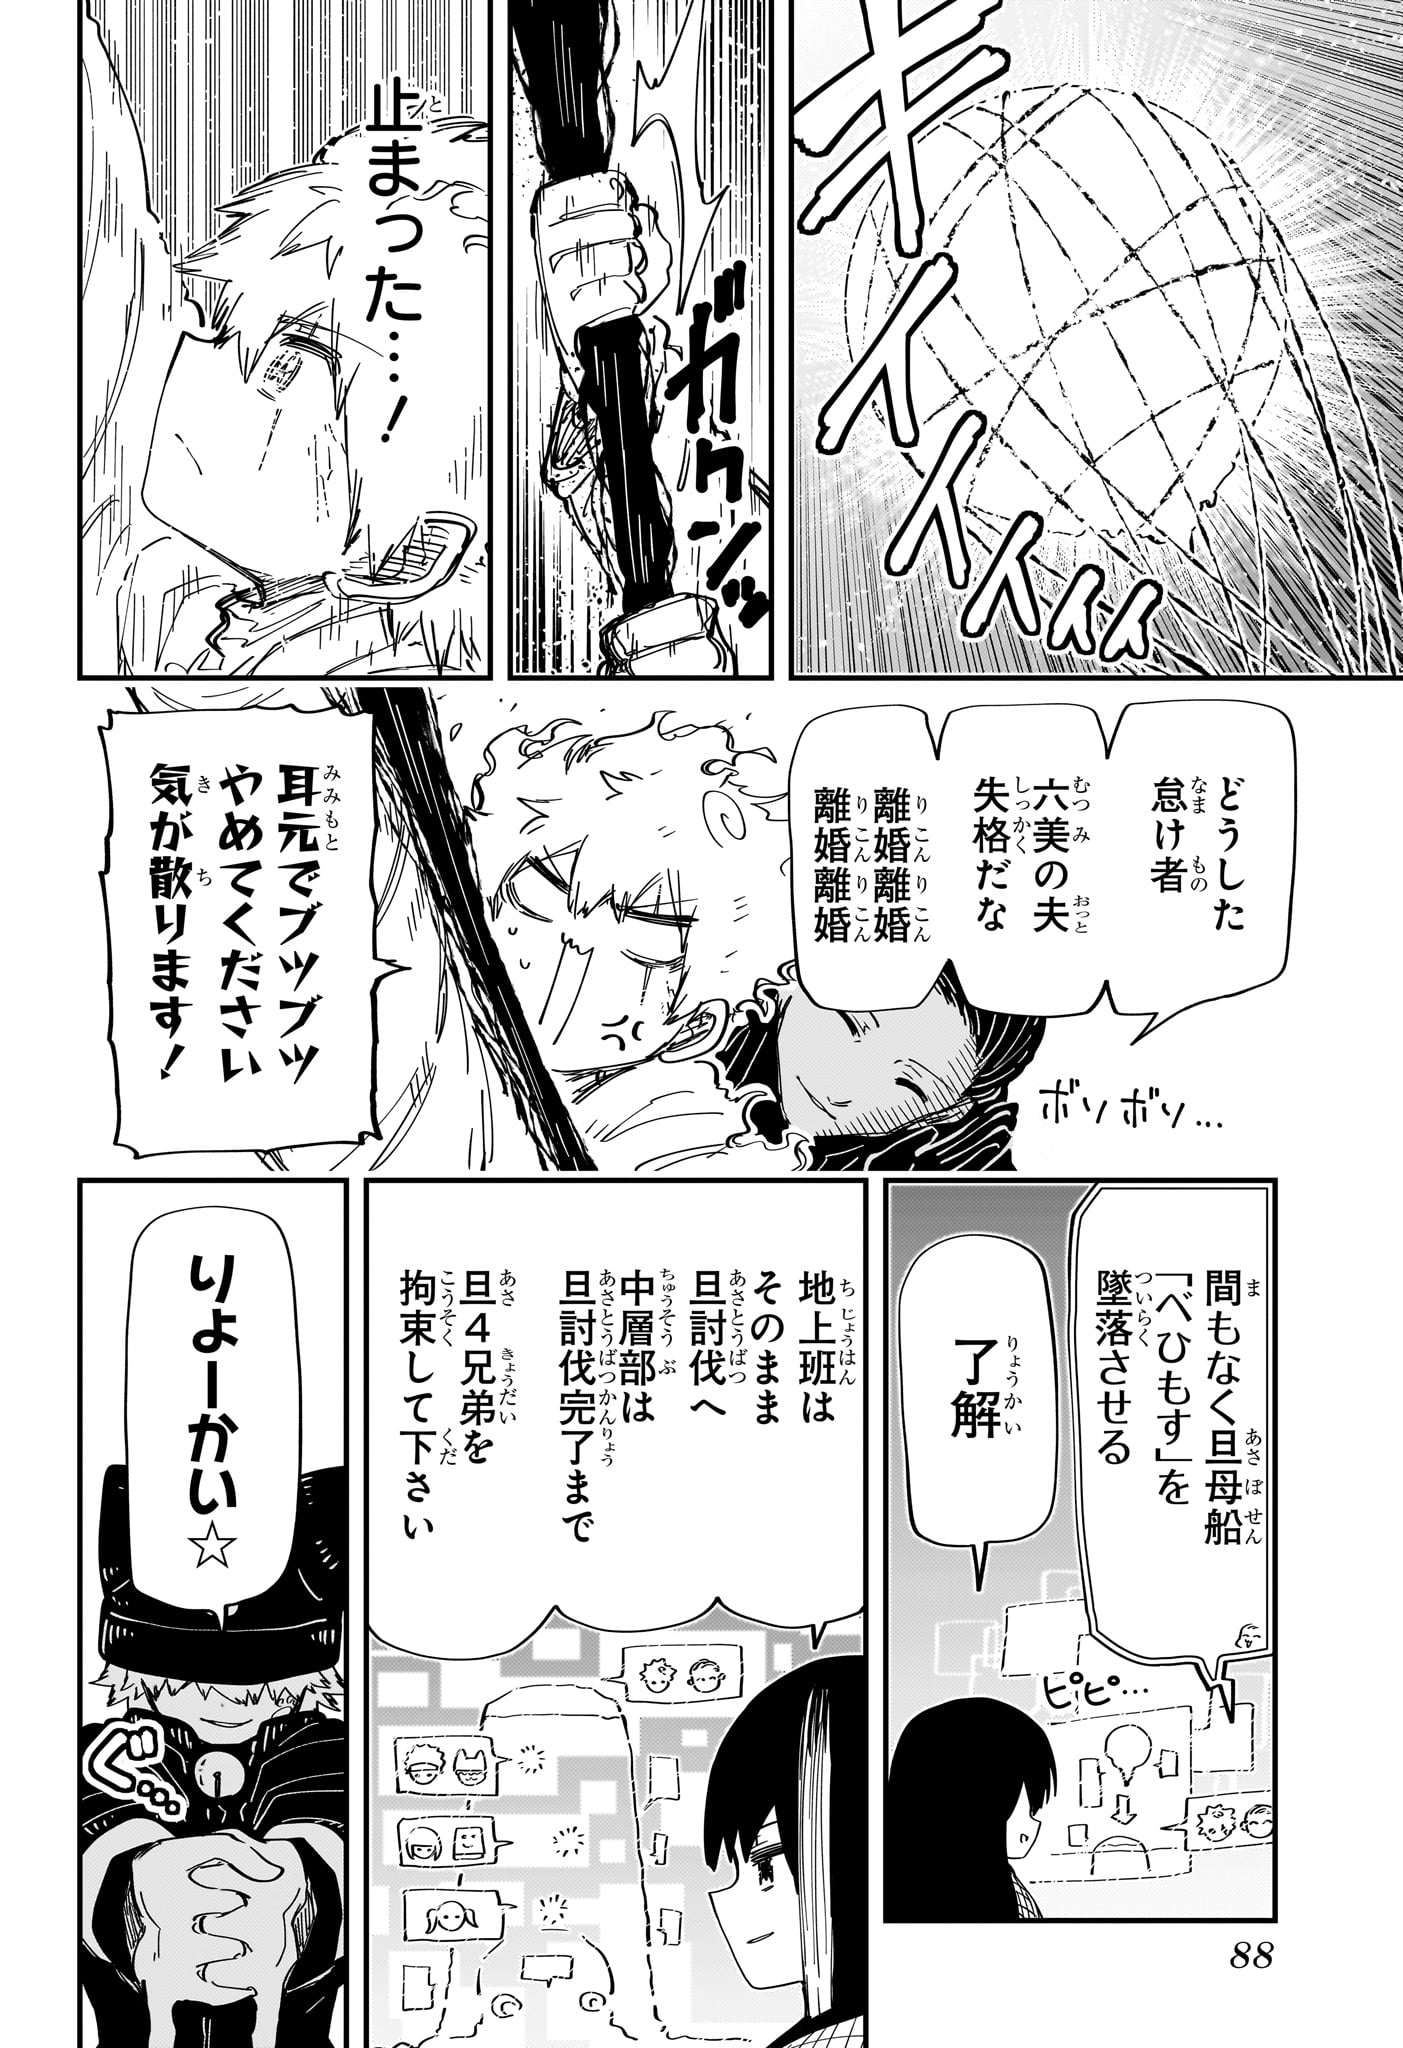 Yozakura-san Chi no Daisakusen - Chapter 226 - Page 4